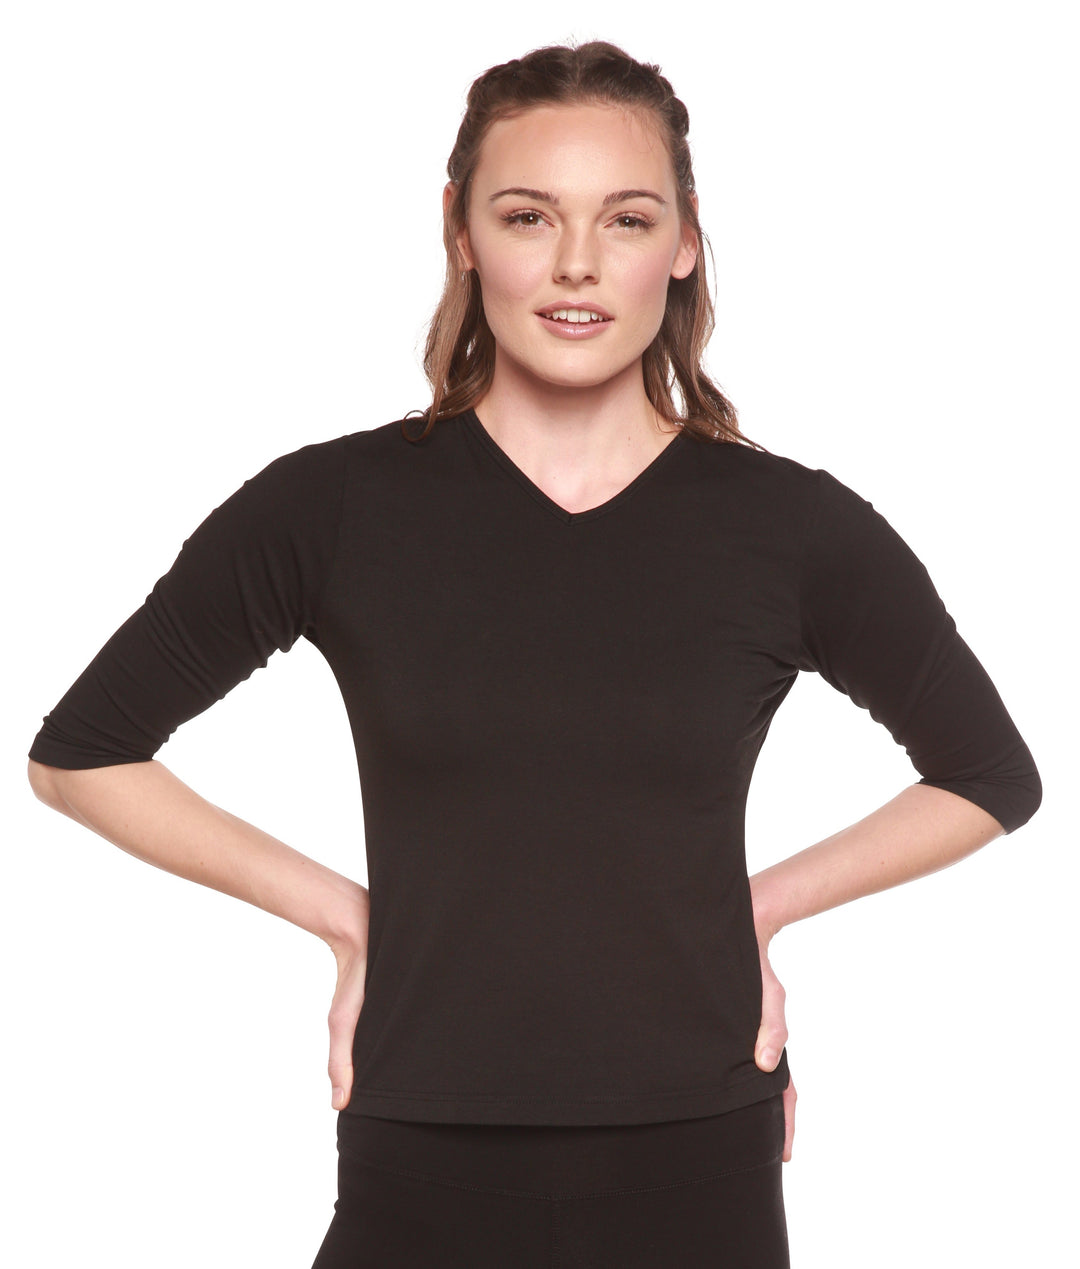 Women's 100% Bamboo Viscose Scoop Neck Short Sleeve T-Shirt – Spun Bamboo